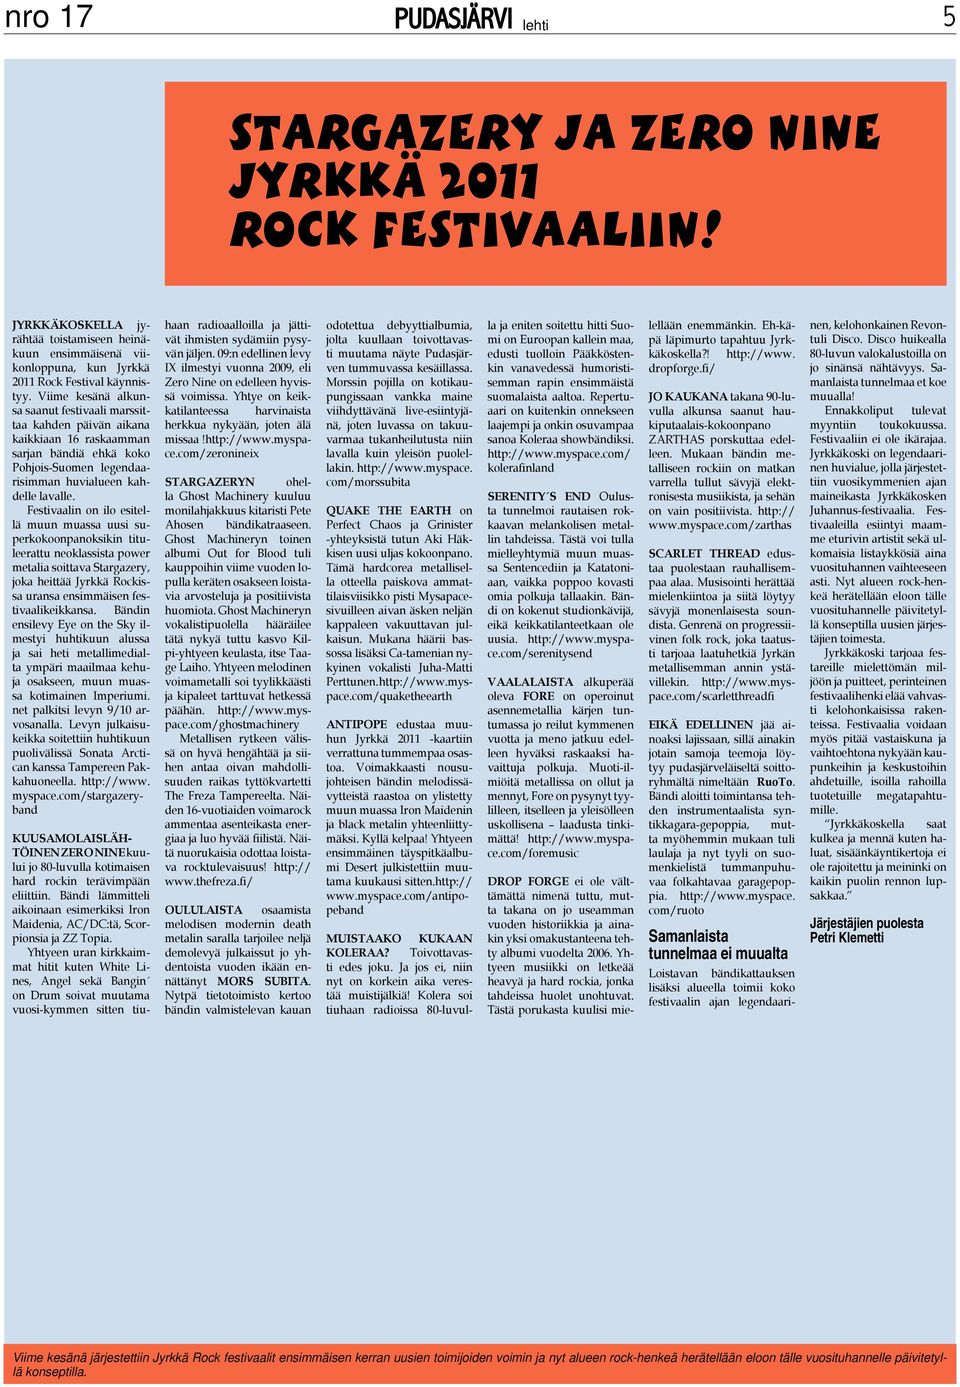 Festivaalin on ilo esitellä muun muassa uusi superkokoonpanoksikin tituleerattu neoklassista power metalia soittava Stargazery, joka heittää Jyrkkä Rockissa uransa ensimmäisen festivaalikeikkansa.